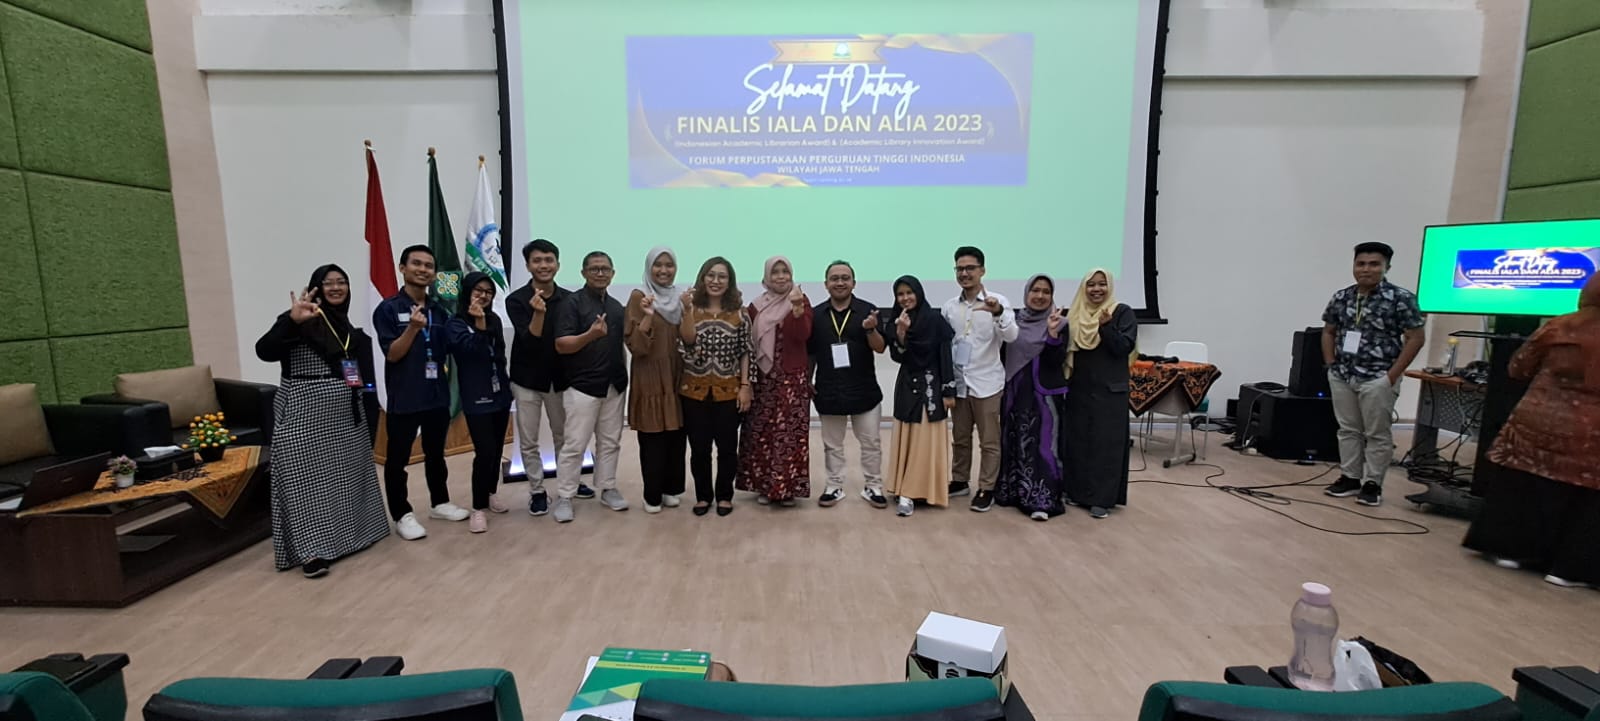 <strong>Perpustakaan UMS Meraih Kejuaraan Lomba IALA dan ALIA FPPTI Jawa Tengah 2023</strong>